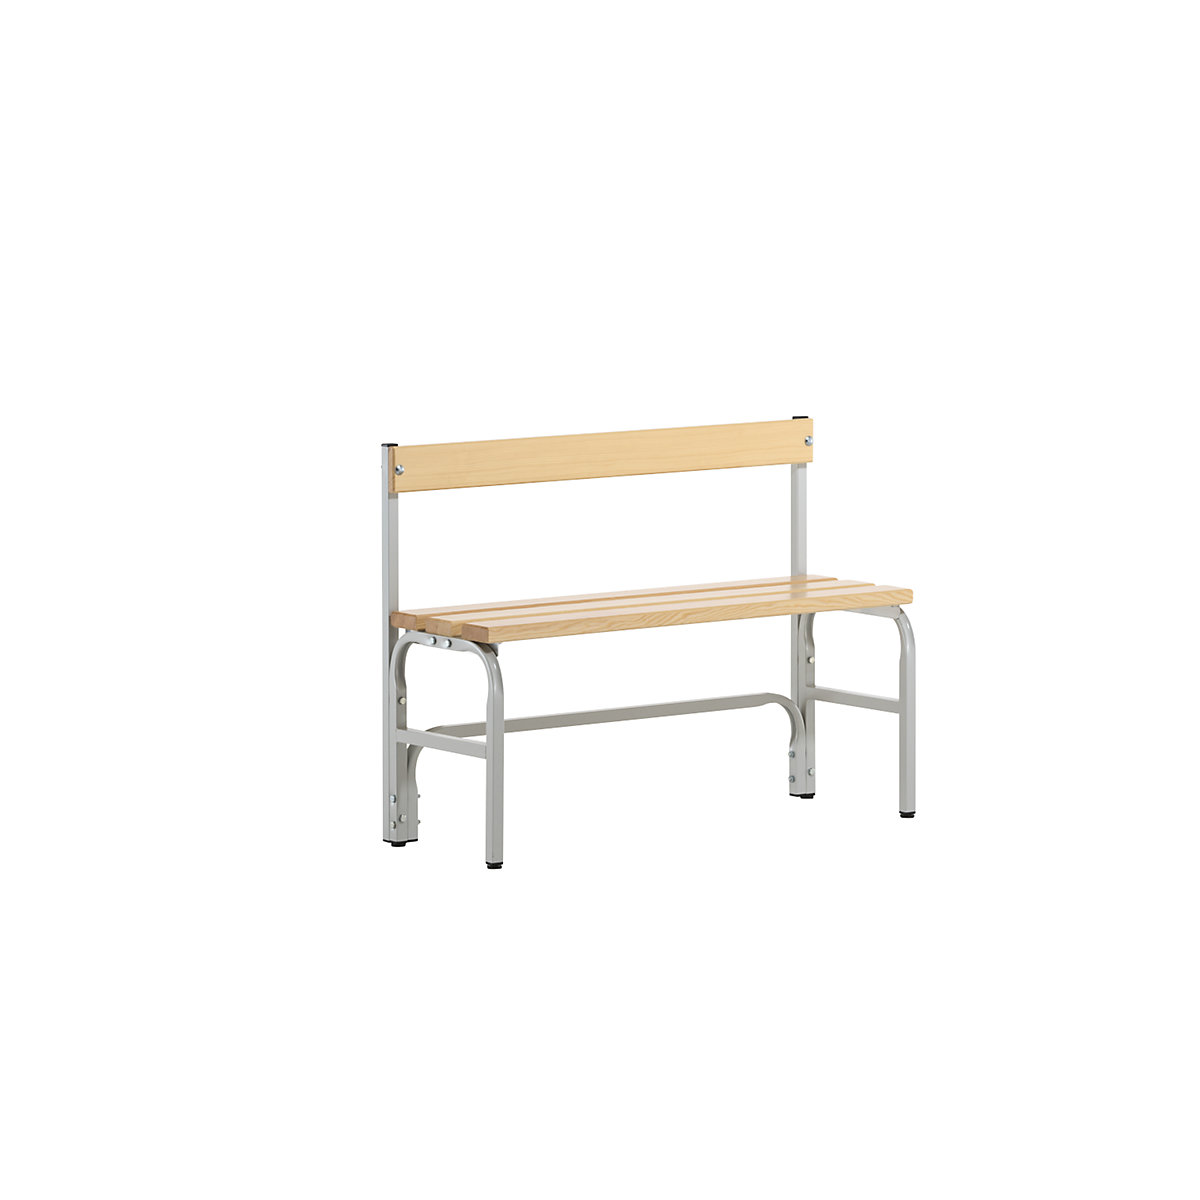 Jednostranná šatnová lavice s poloviční výškou a opěradlem – Sypro